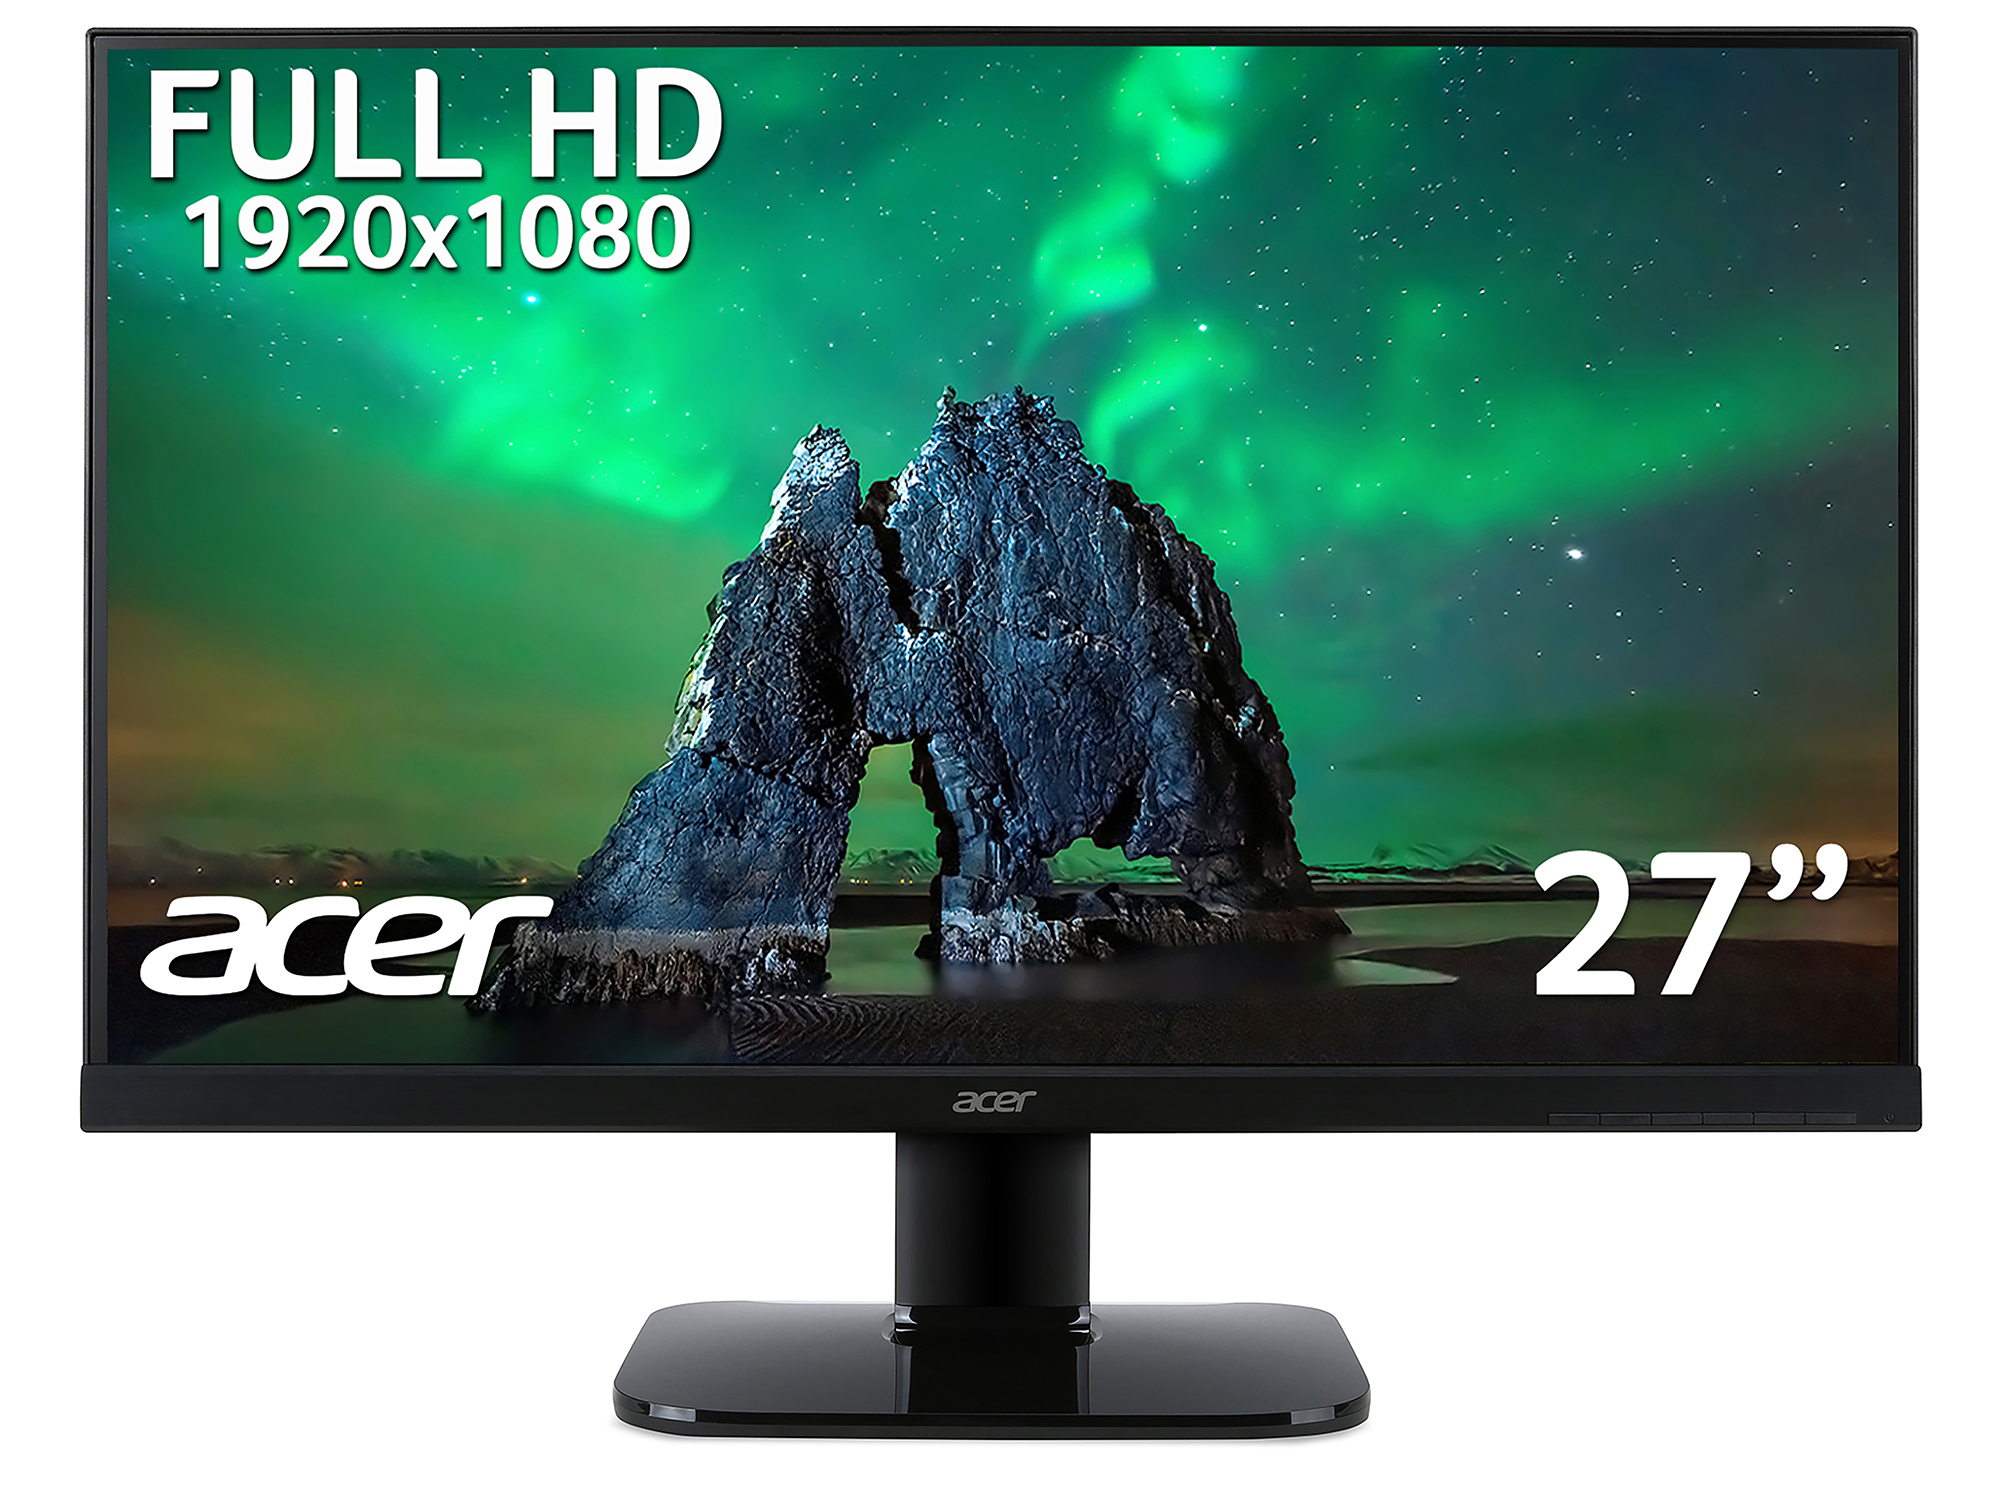 Acer KA270Hbmix 27? 100Hz VA Display with HDMI